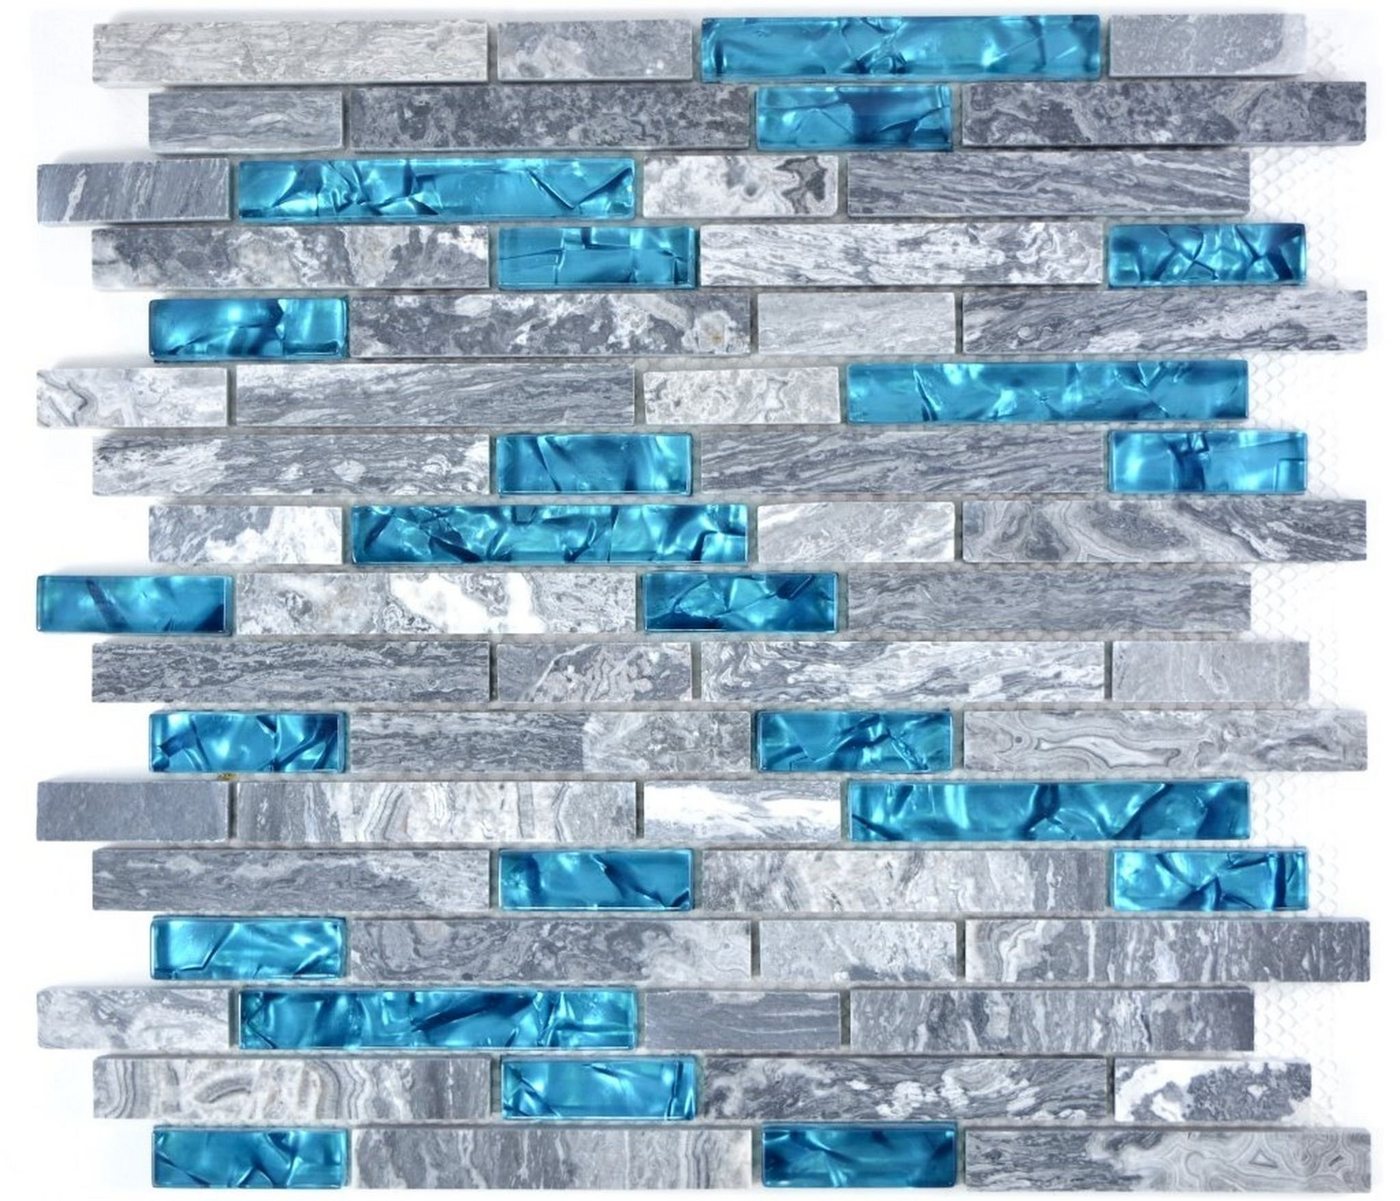 Mosani Mosaikfliesen Marmor Naturstein Fliesen Glasmosik Wandfliesen Grau Blau, 30cm x 29cm, Dekorative Wandverkleidung von Mosani